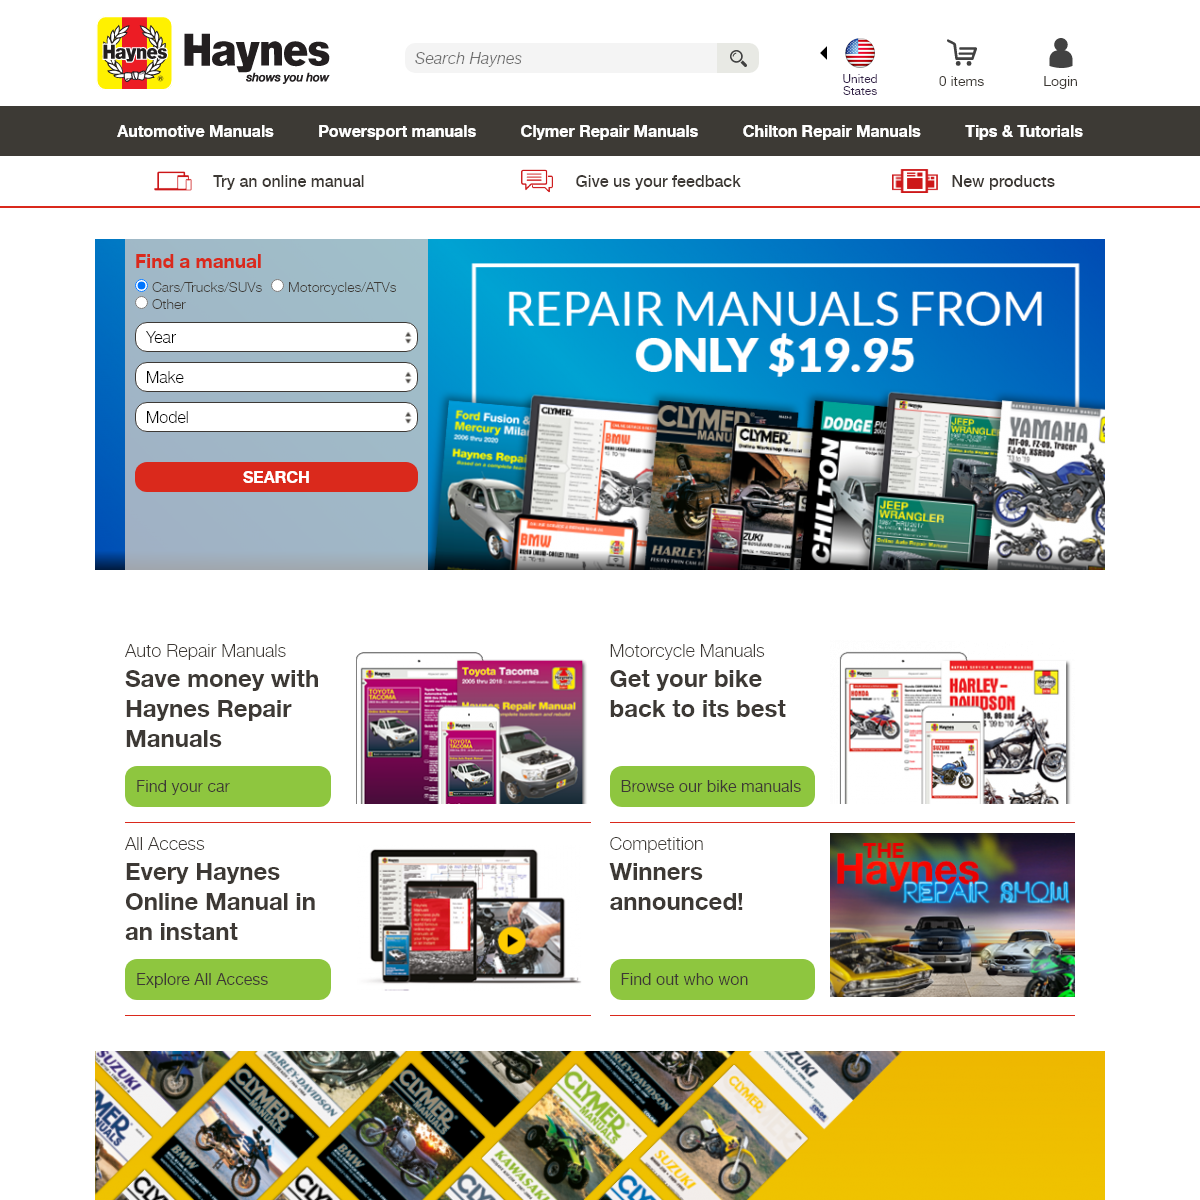 A complete backup of haynes.com